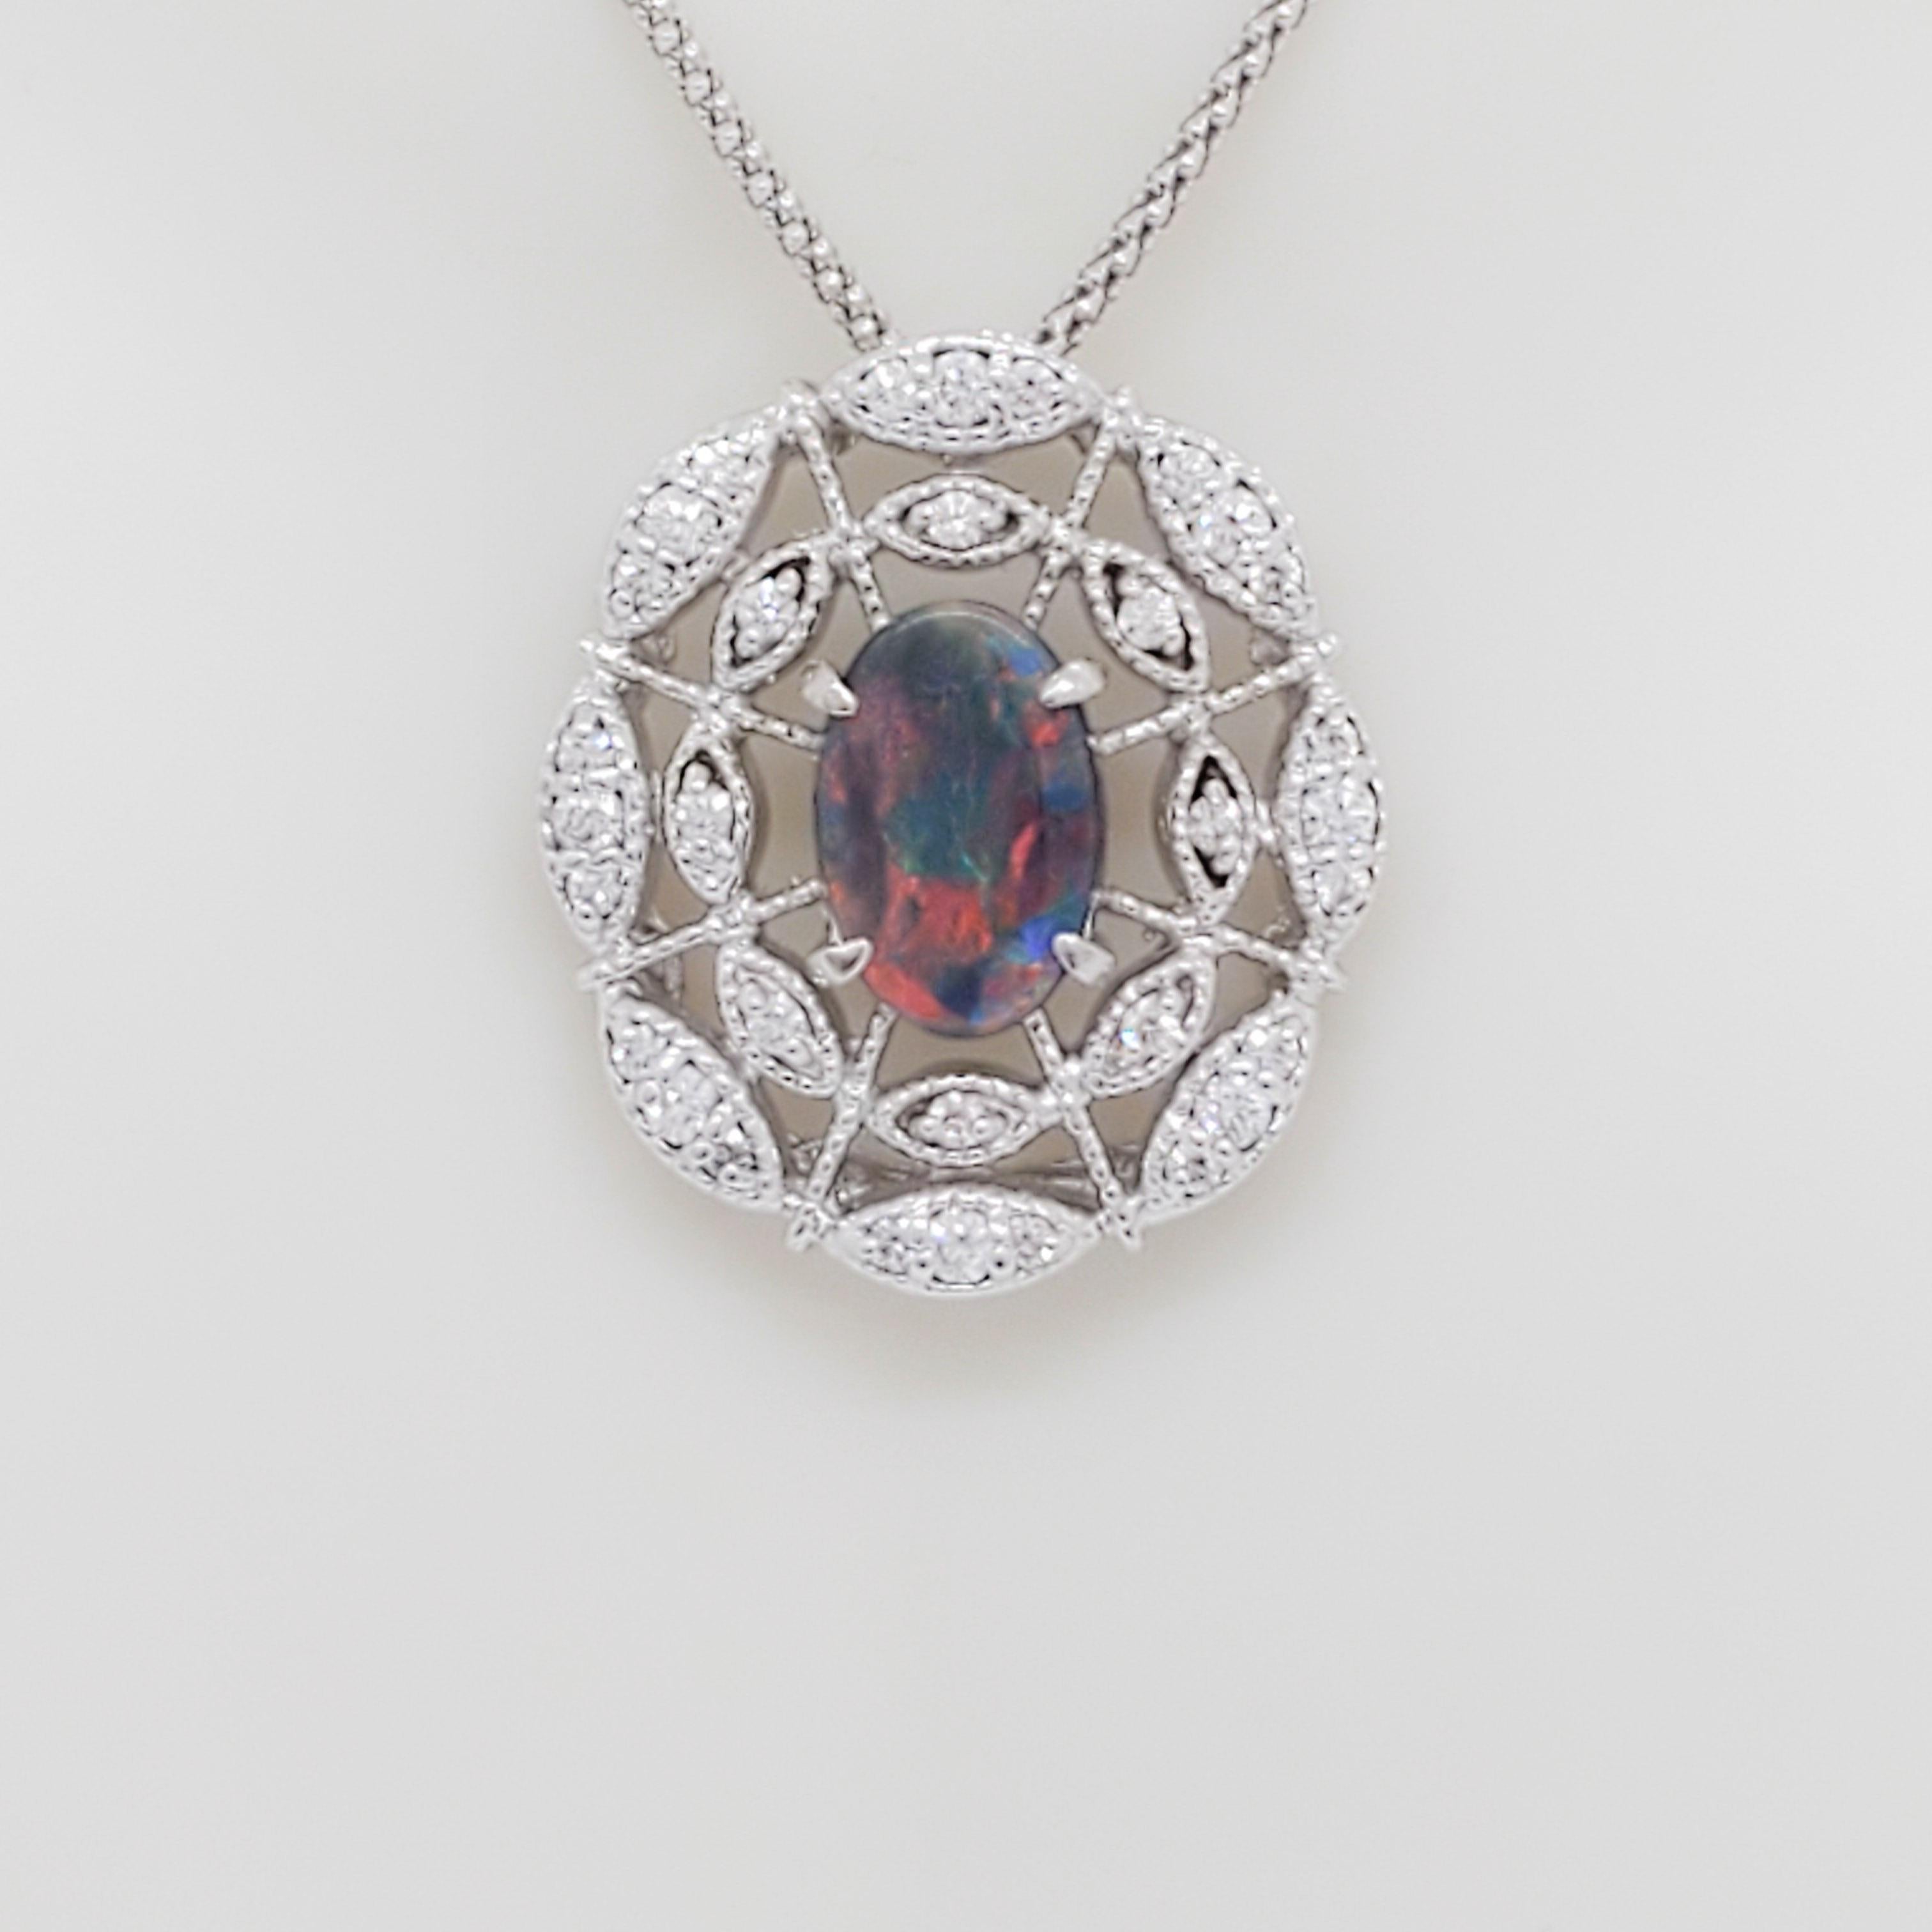 Magnifique ovale d'opale noire de 0,91 ct. avec 0,52 ct. de diamants blancs ronds de bonne qualité.  Fabriqué à la main en or blanc 18 carats.  La chaîne a une longueur de 18